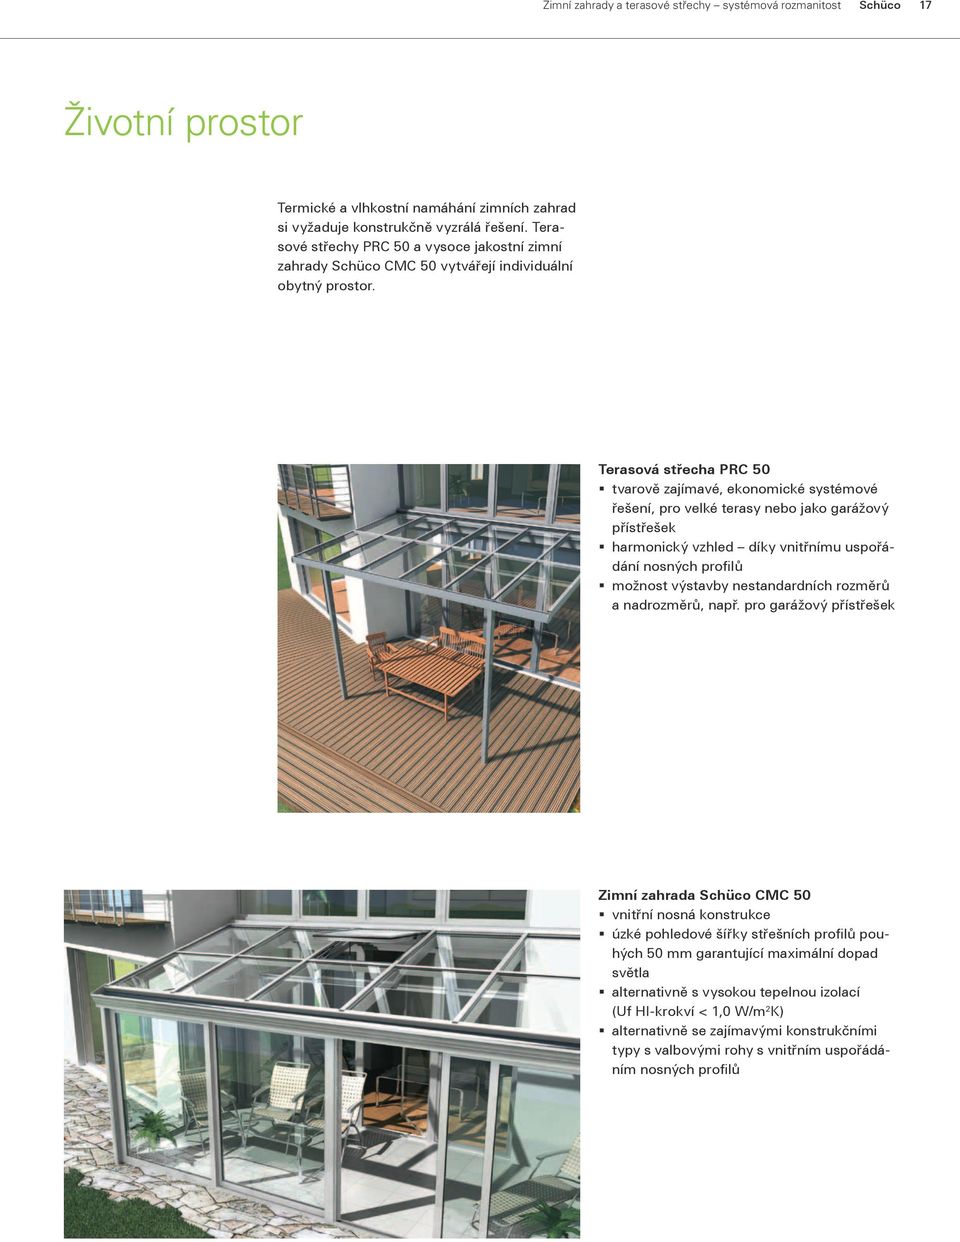 Terasová střecha PRC 50 tvarově zajímavé, ekonomické systémové řešení, pro velké terasy nebo jako garážový přístřešek harmonický vzhled díky vnitřnímu uspořádání nosných profilů možnost výstavby